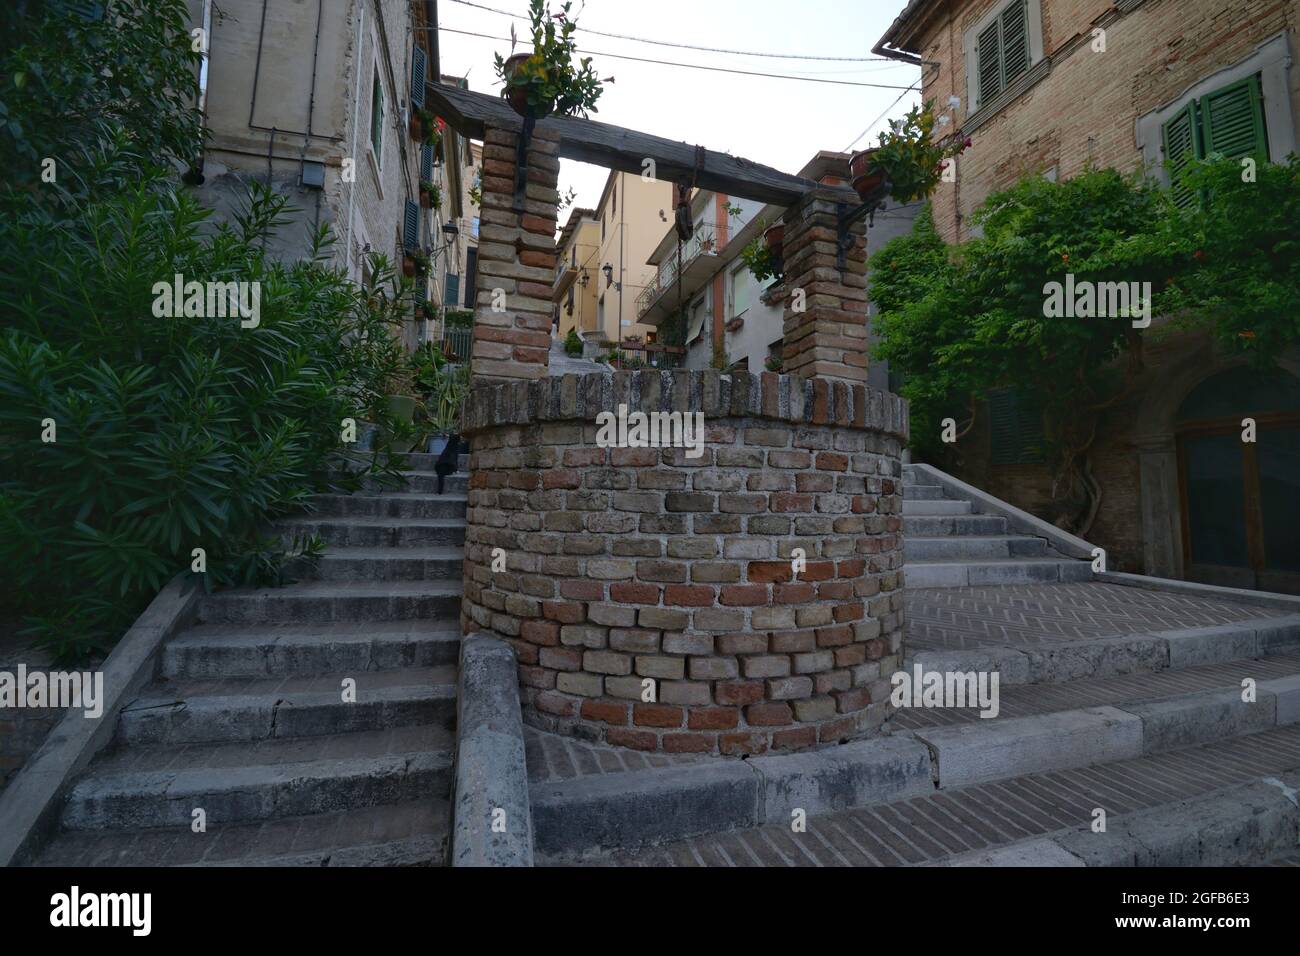 Pozzo d'acqua in mattoni medievali sulla scala della città di Corinaldo, Marche, Italia Foto Stock